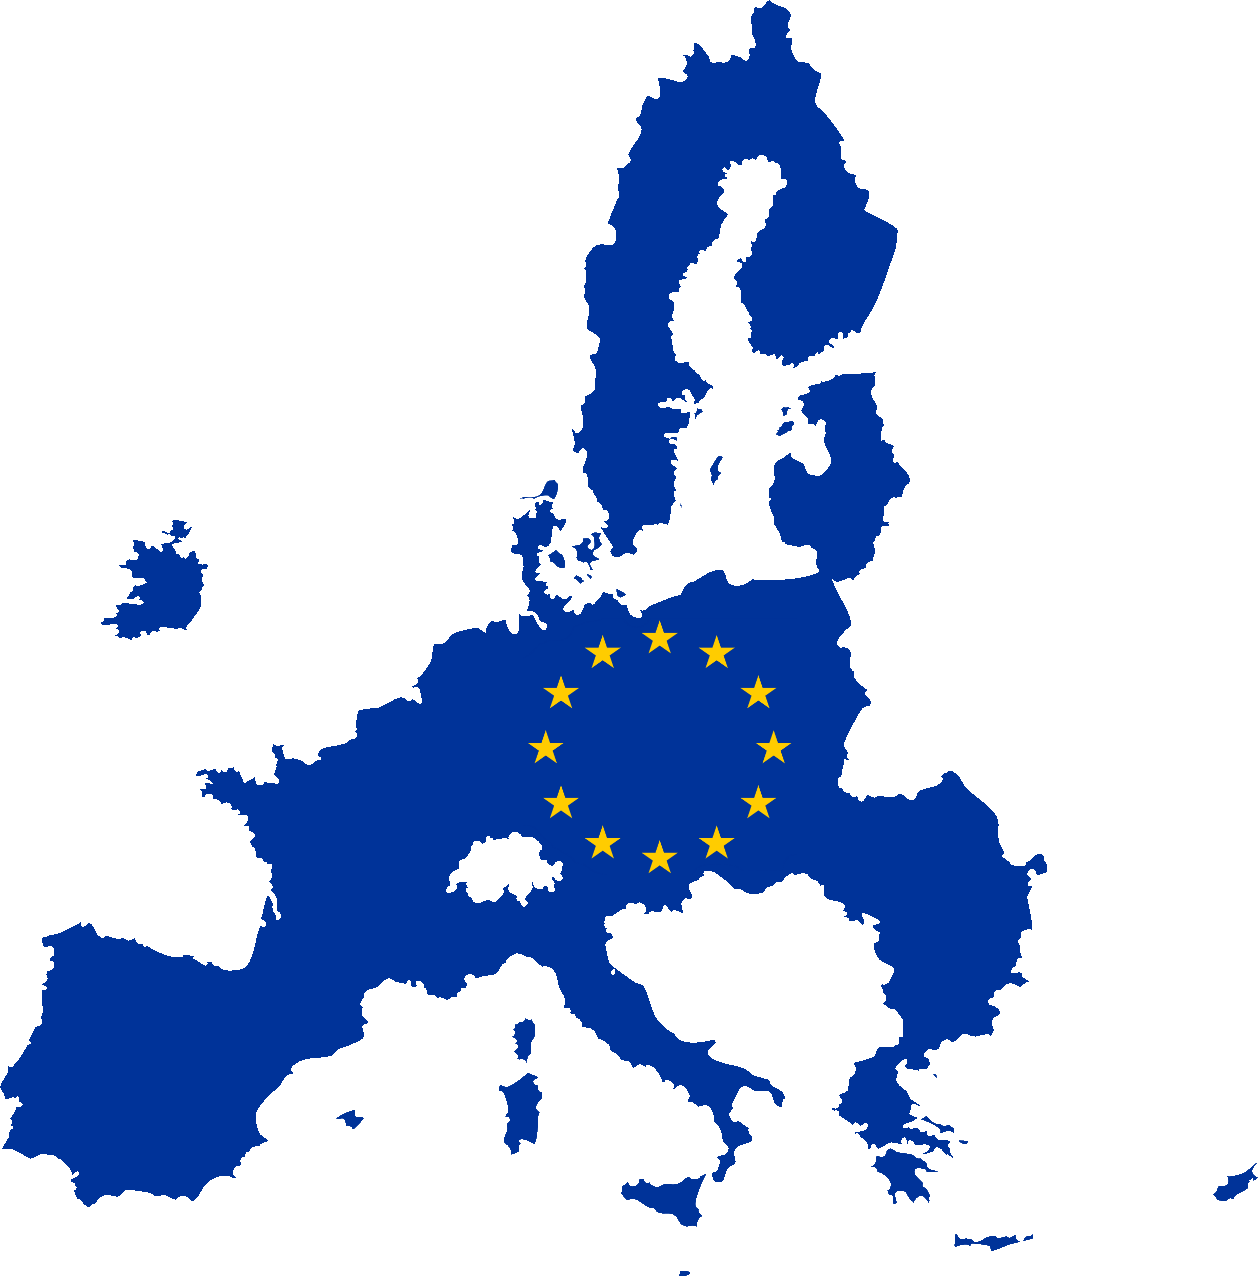 Les 27 Etats de l'UE